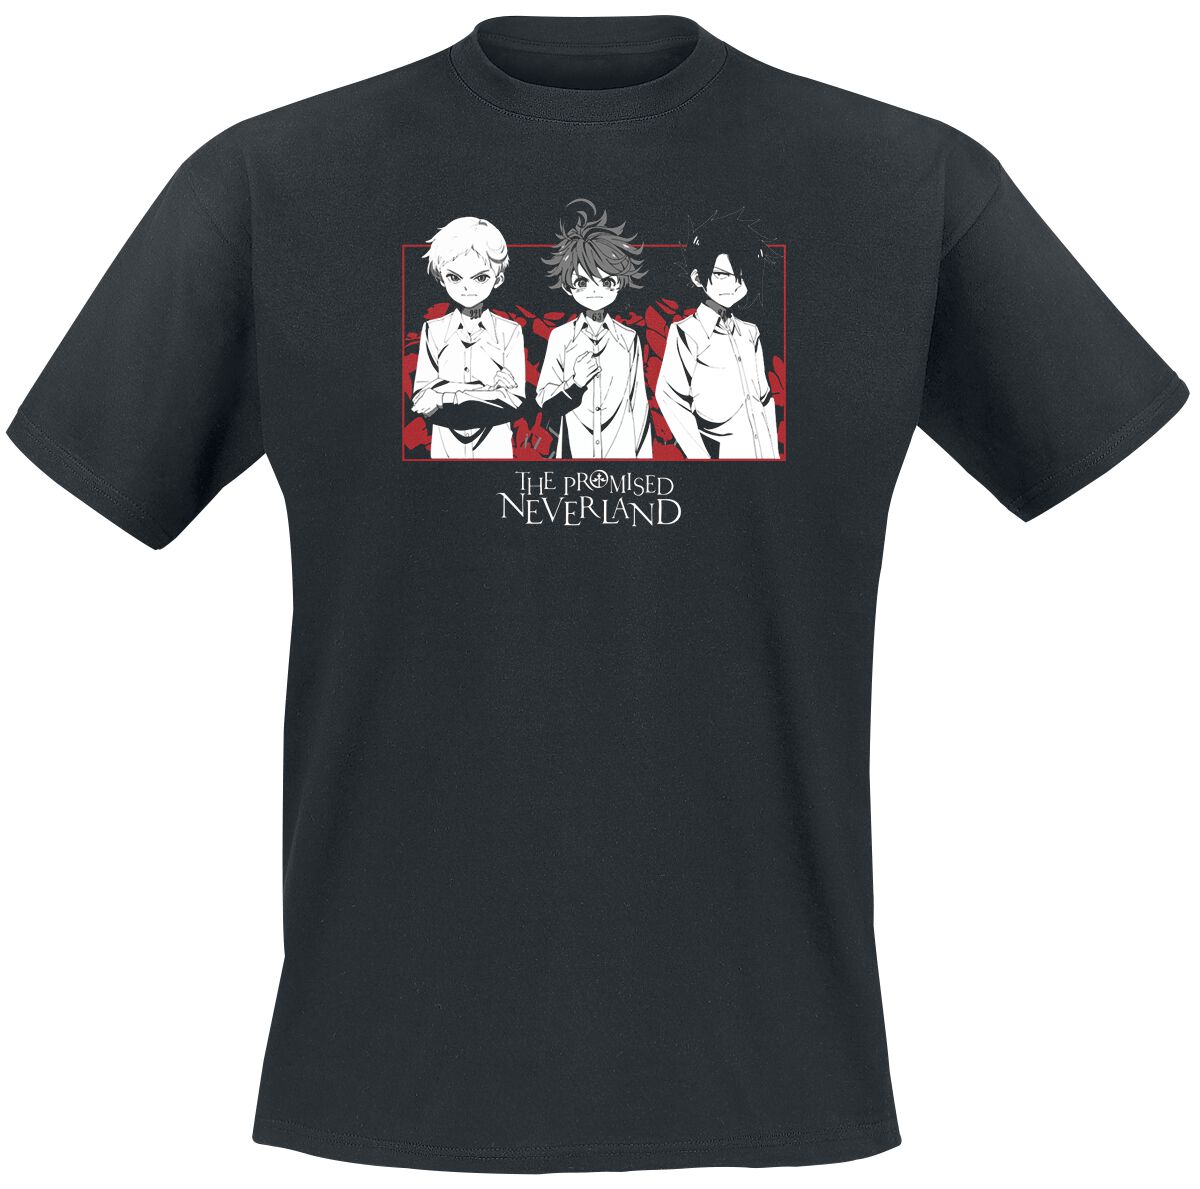 the promised neverland - anime t-shirt - emma, norman - s bis xl - fÃ¼r mÃ¤nner - grÃ¶ÃŸe s - - lizenzierter fanartikel schwarz uomo